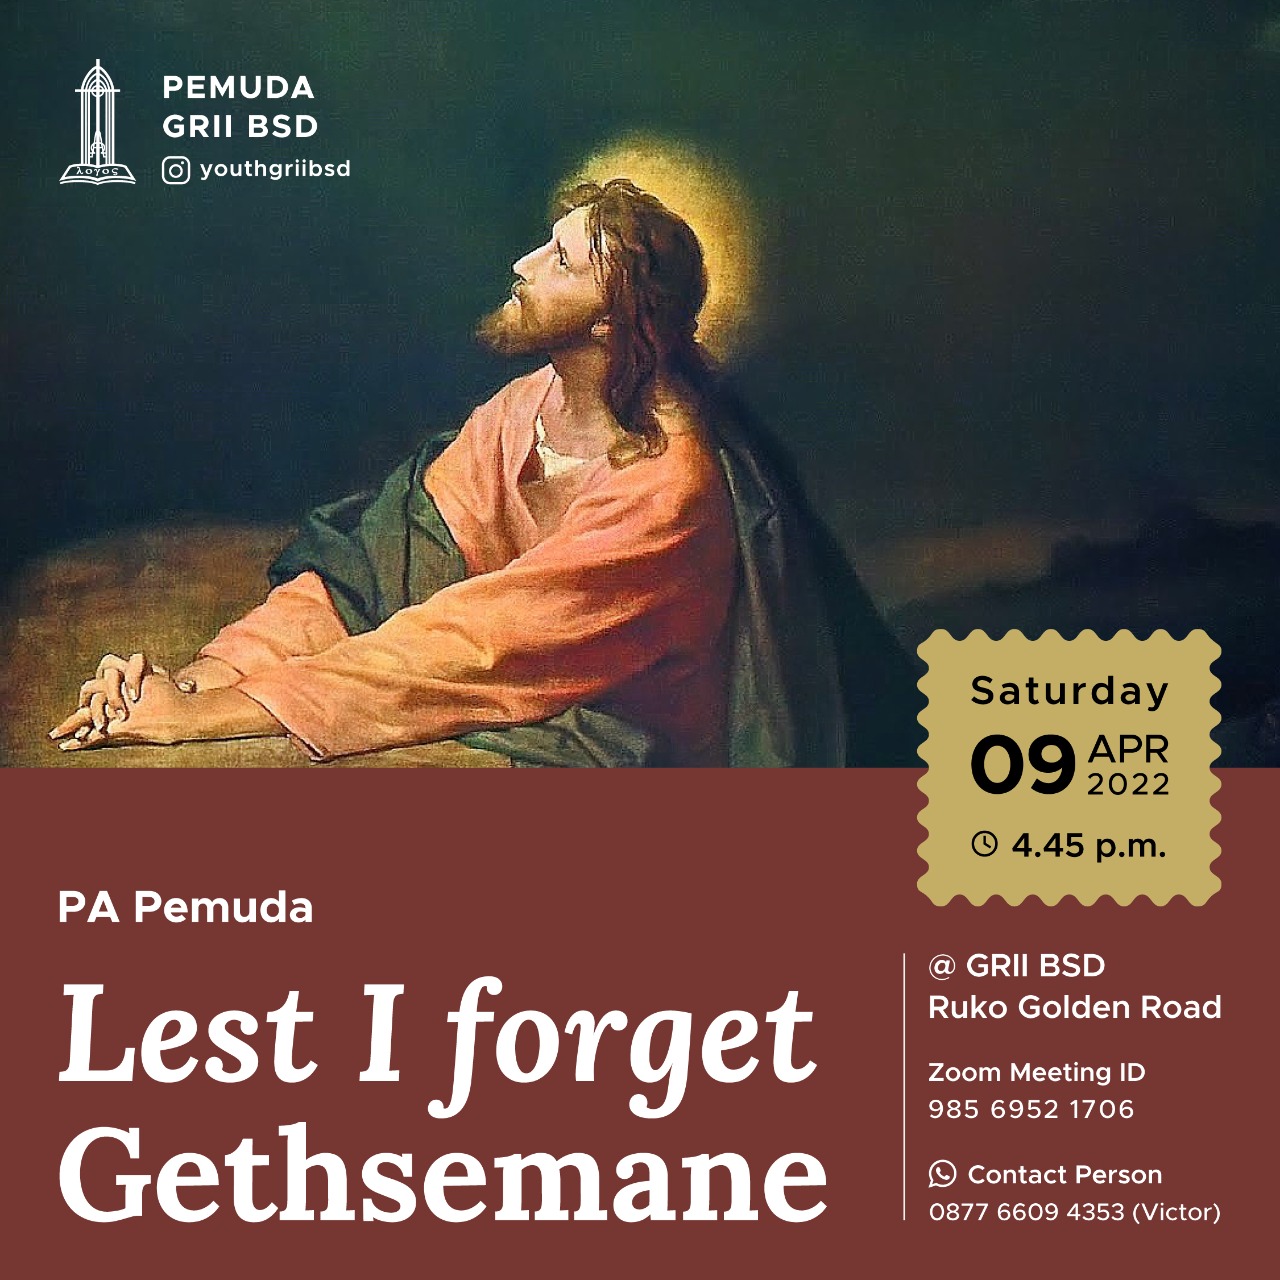 Lest I Forget Gethsemane